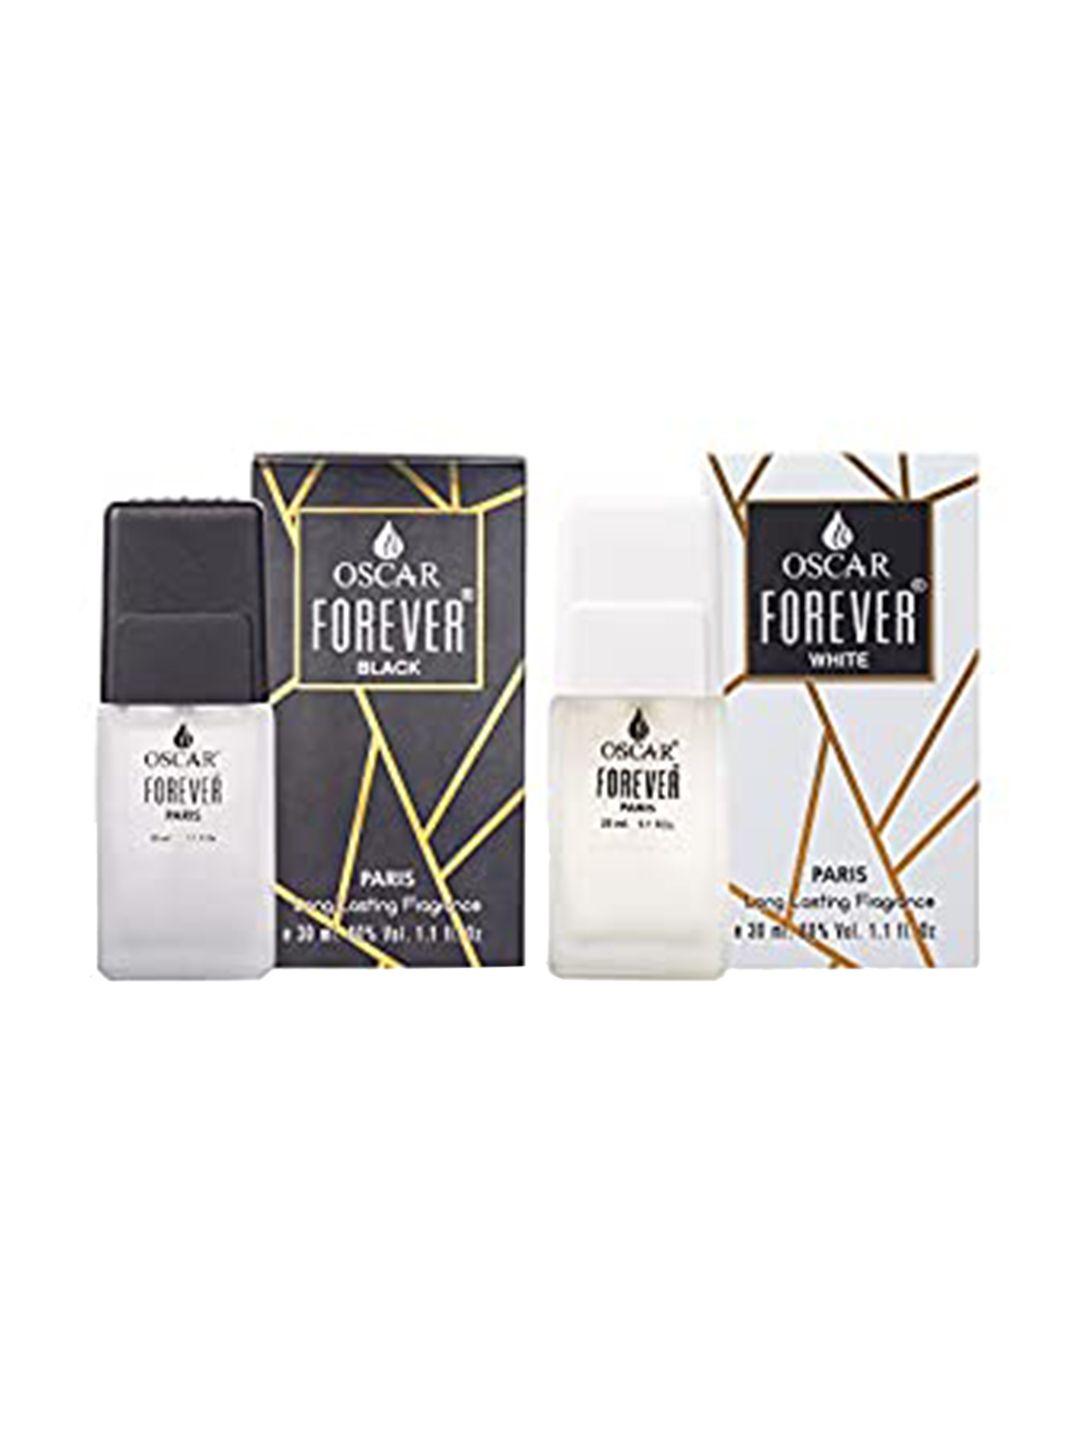 oscar forever set of black & white long lasting perfume - 30 ml each